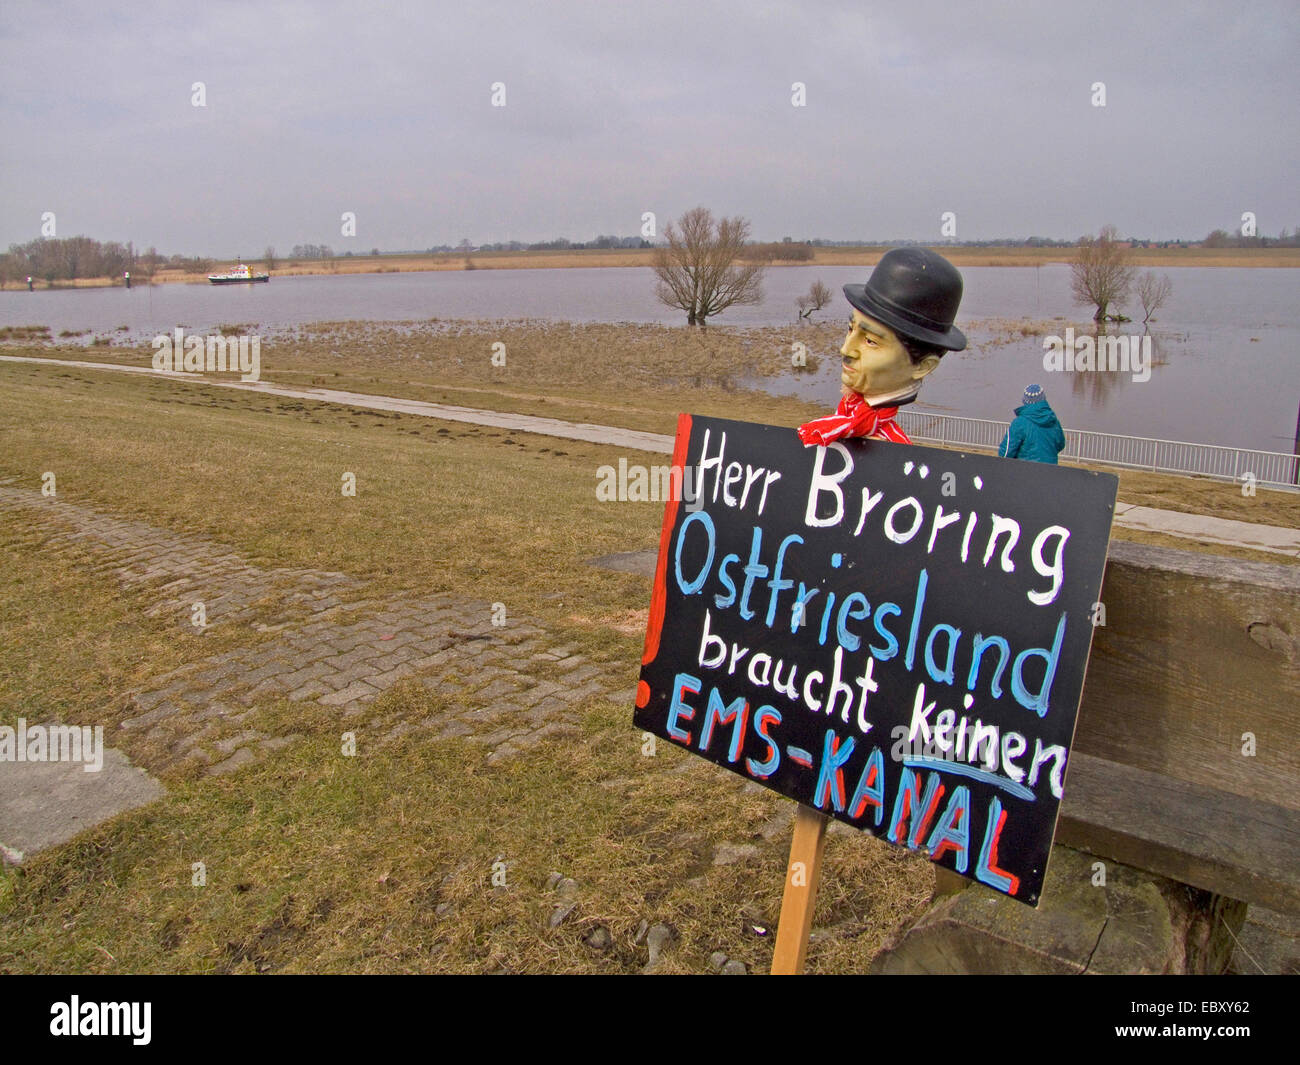 Tafel mit der Aufschrift "Ostfriesland brauchen keine Ems-Kanal", Deutschland, Niedersachsen Stockfoto